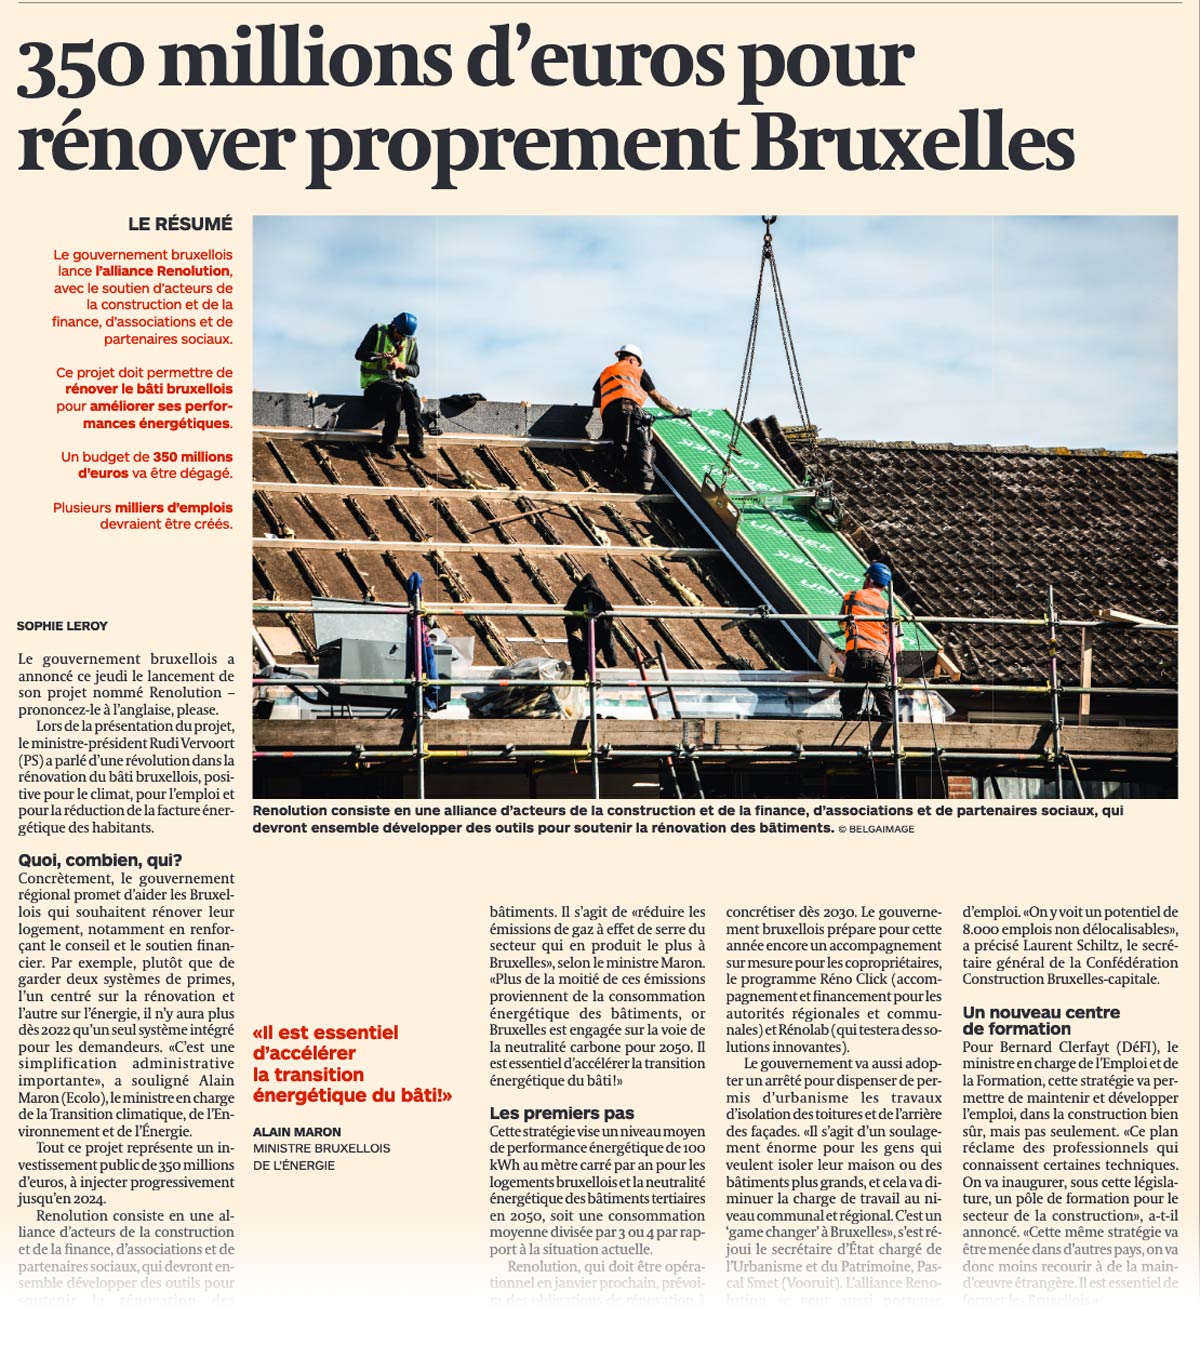 350 millions d'euros pour rénover proprement Bruxelles